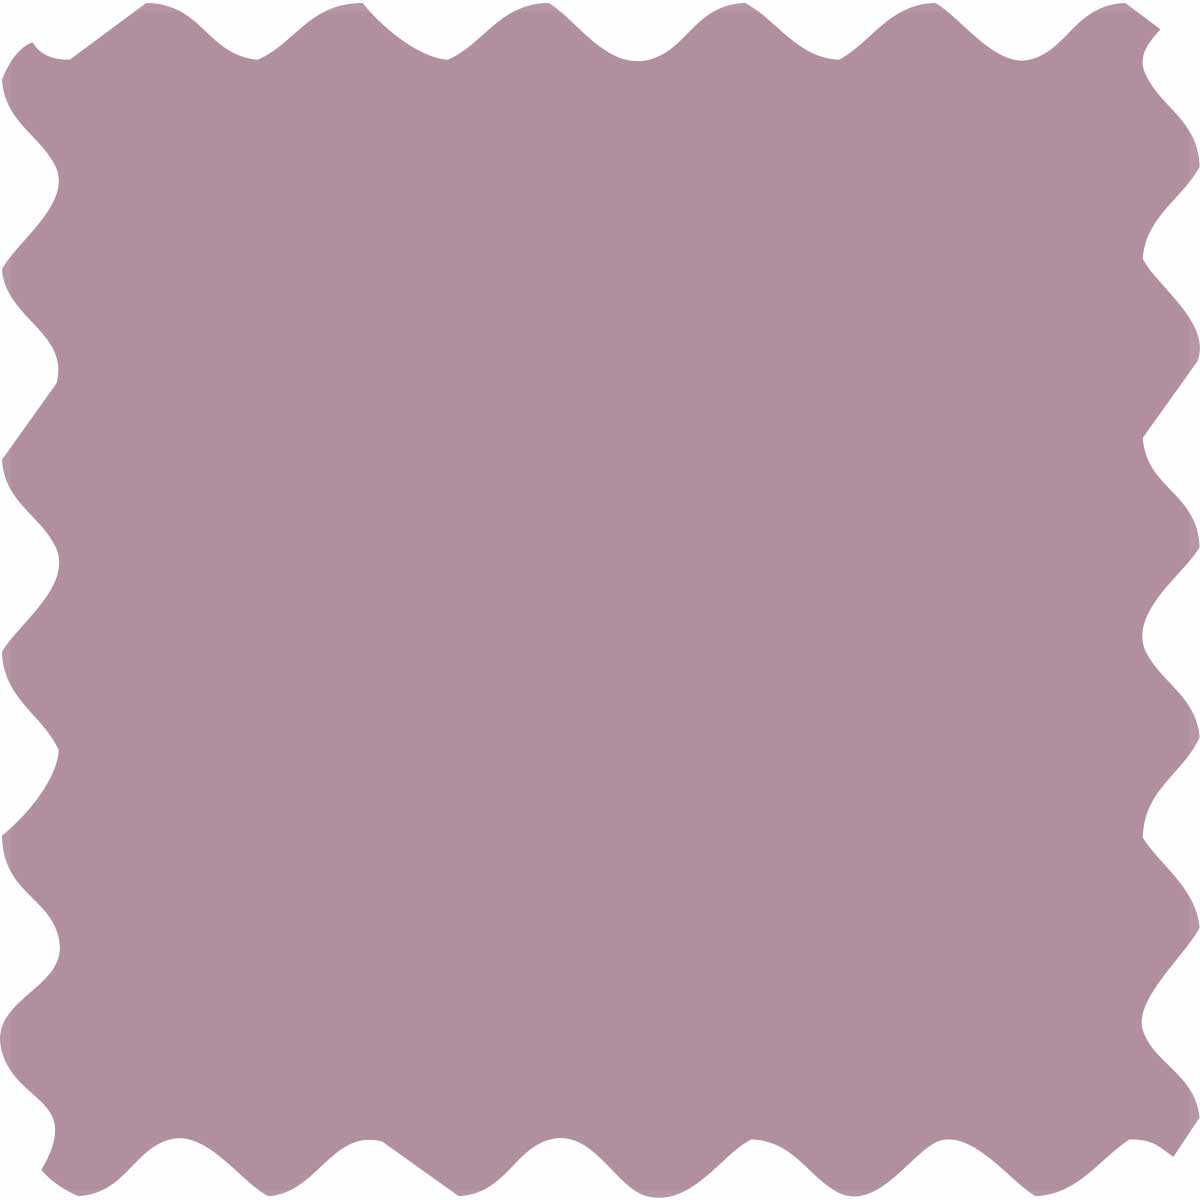 Fabric Creations™ Plush™ 3-D Fabric Paints - Lavender, 2 oz. - 26339